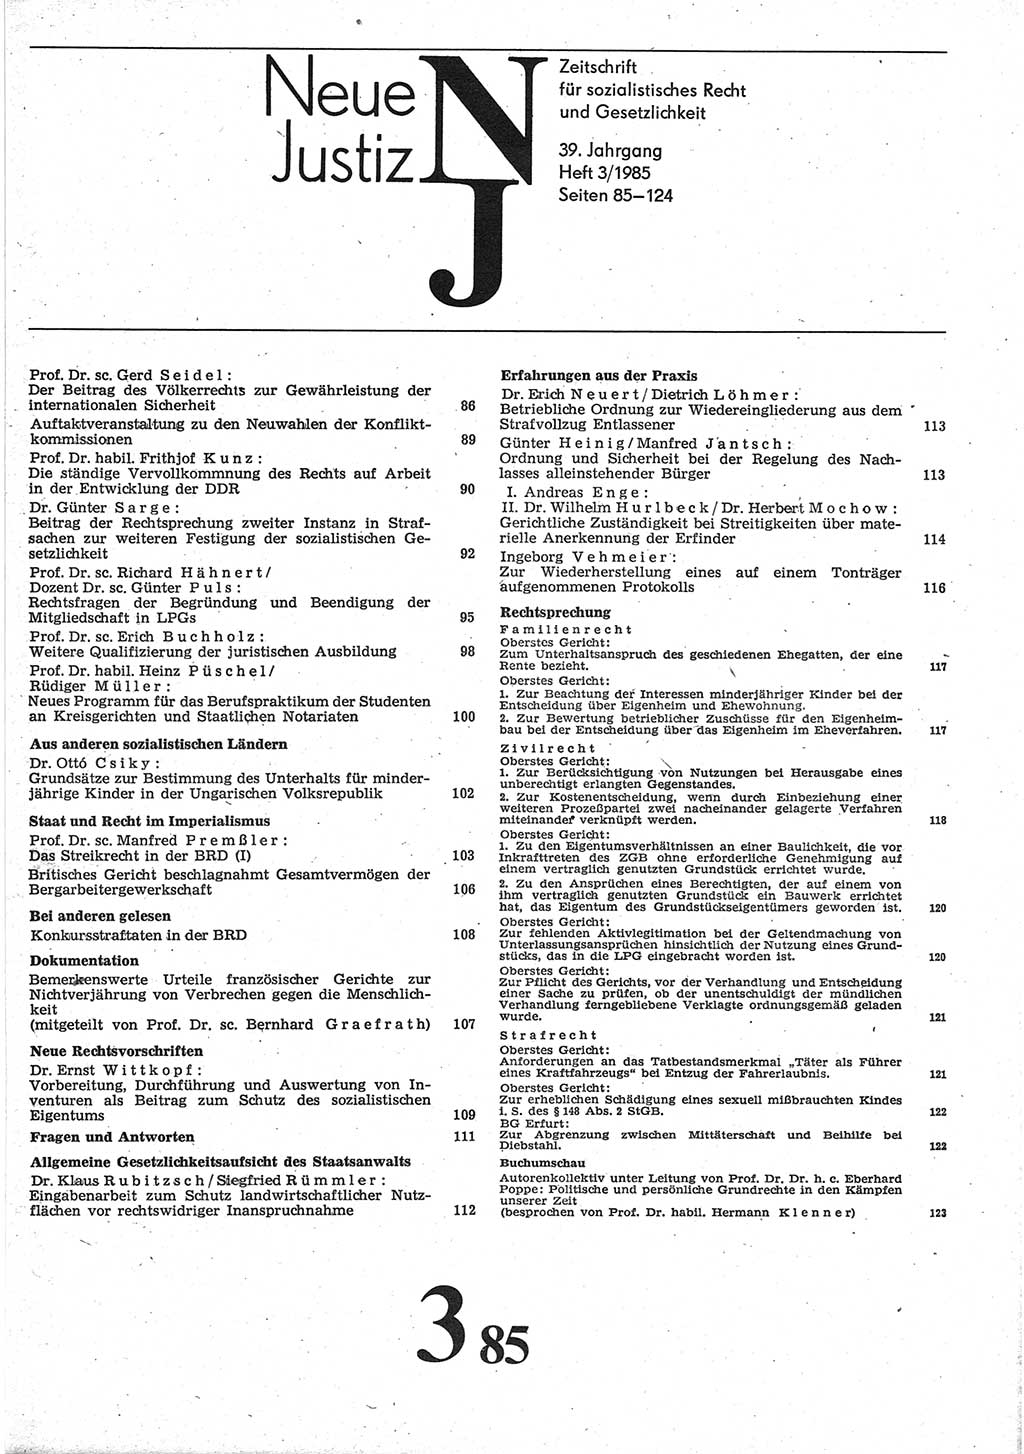 Neue Justiz (NJ), Zeitschrift für sozialistisches Recht und Gesetzlichkeit [Deutsche Demokratische Republik (DDR)], 39. Jahrgang 1985, Seite 85 (NJ DDR 1985, S. 85)